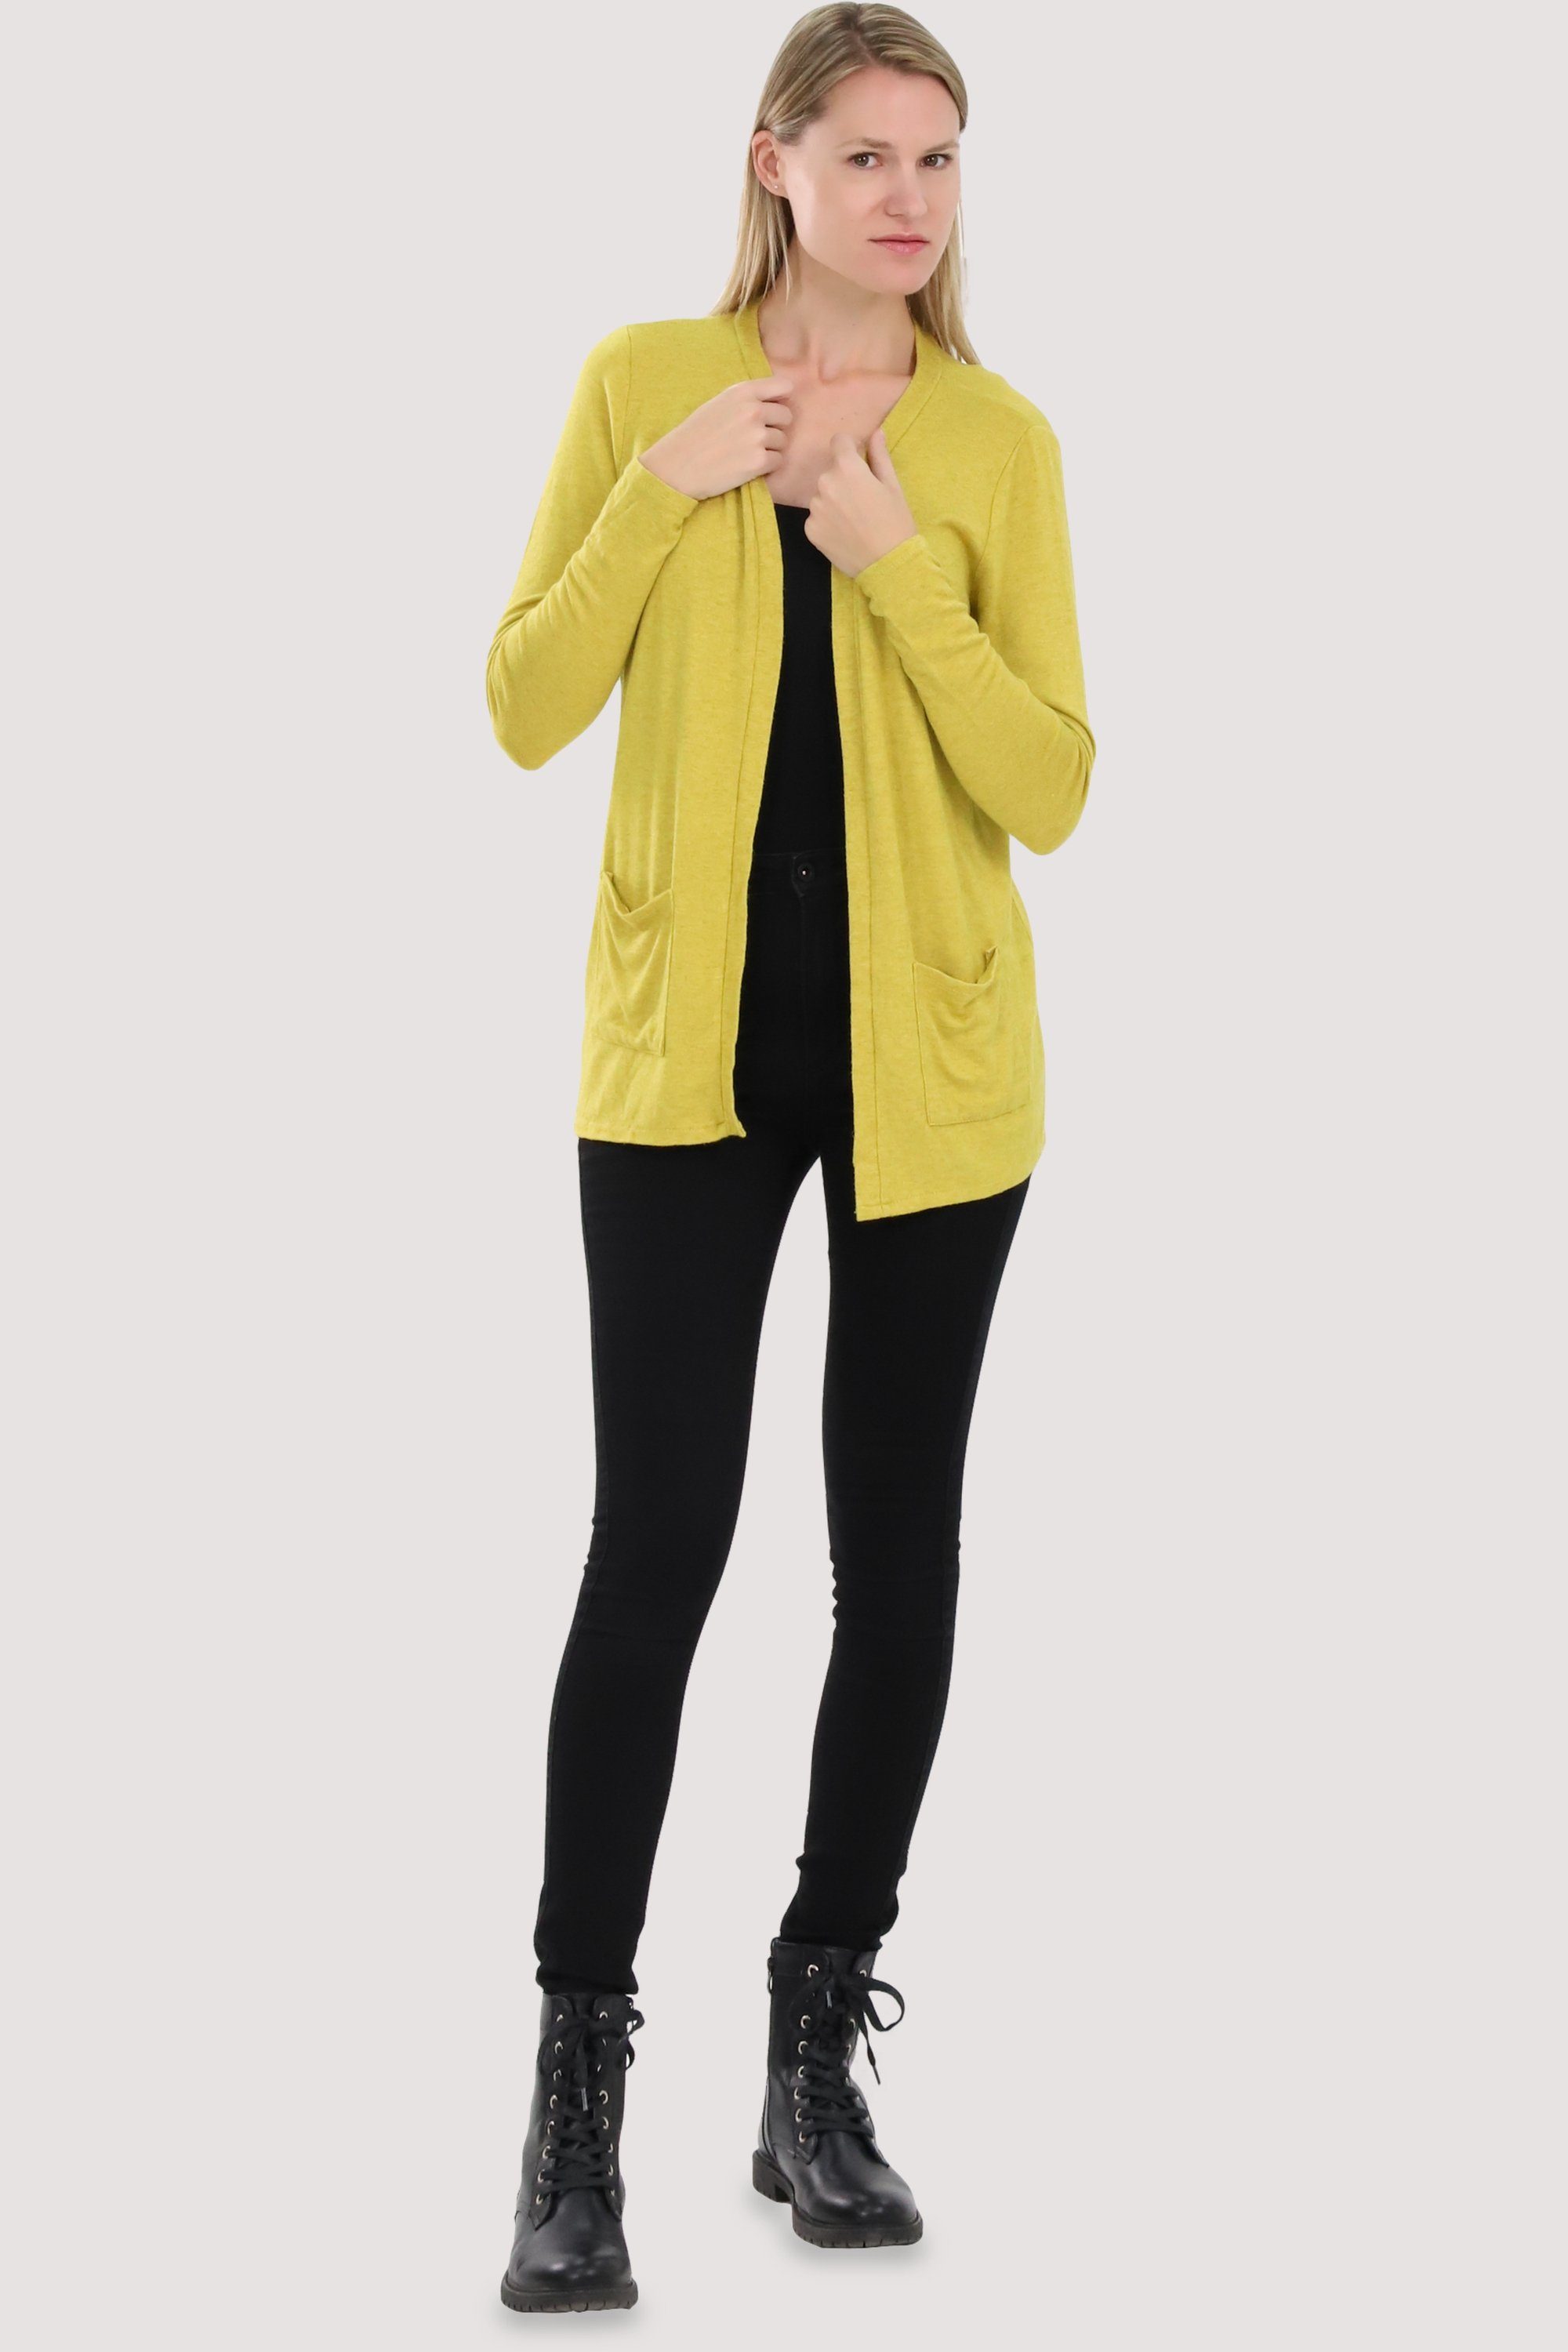 fashion Jacke more 2243 Feinstrick mit Cardigan gelb malito Eingriffstaschen than